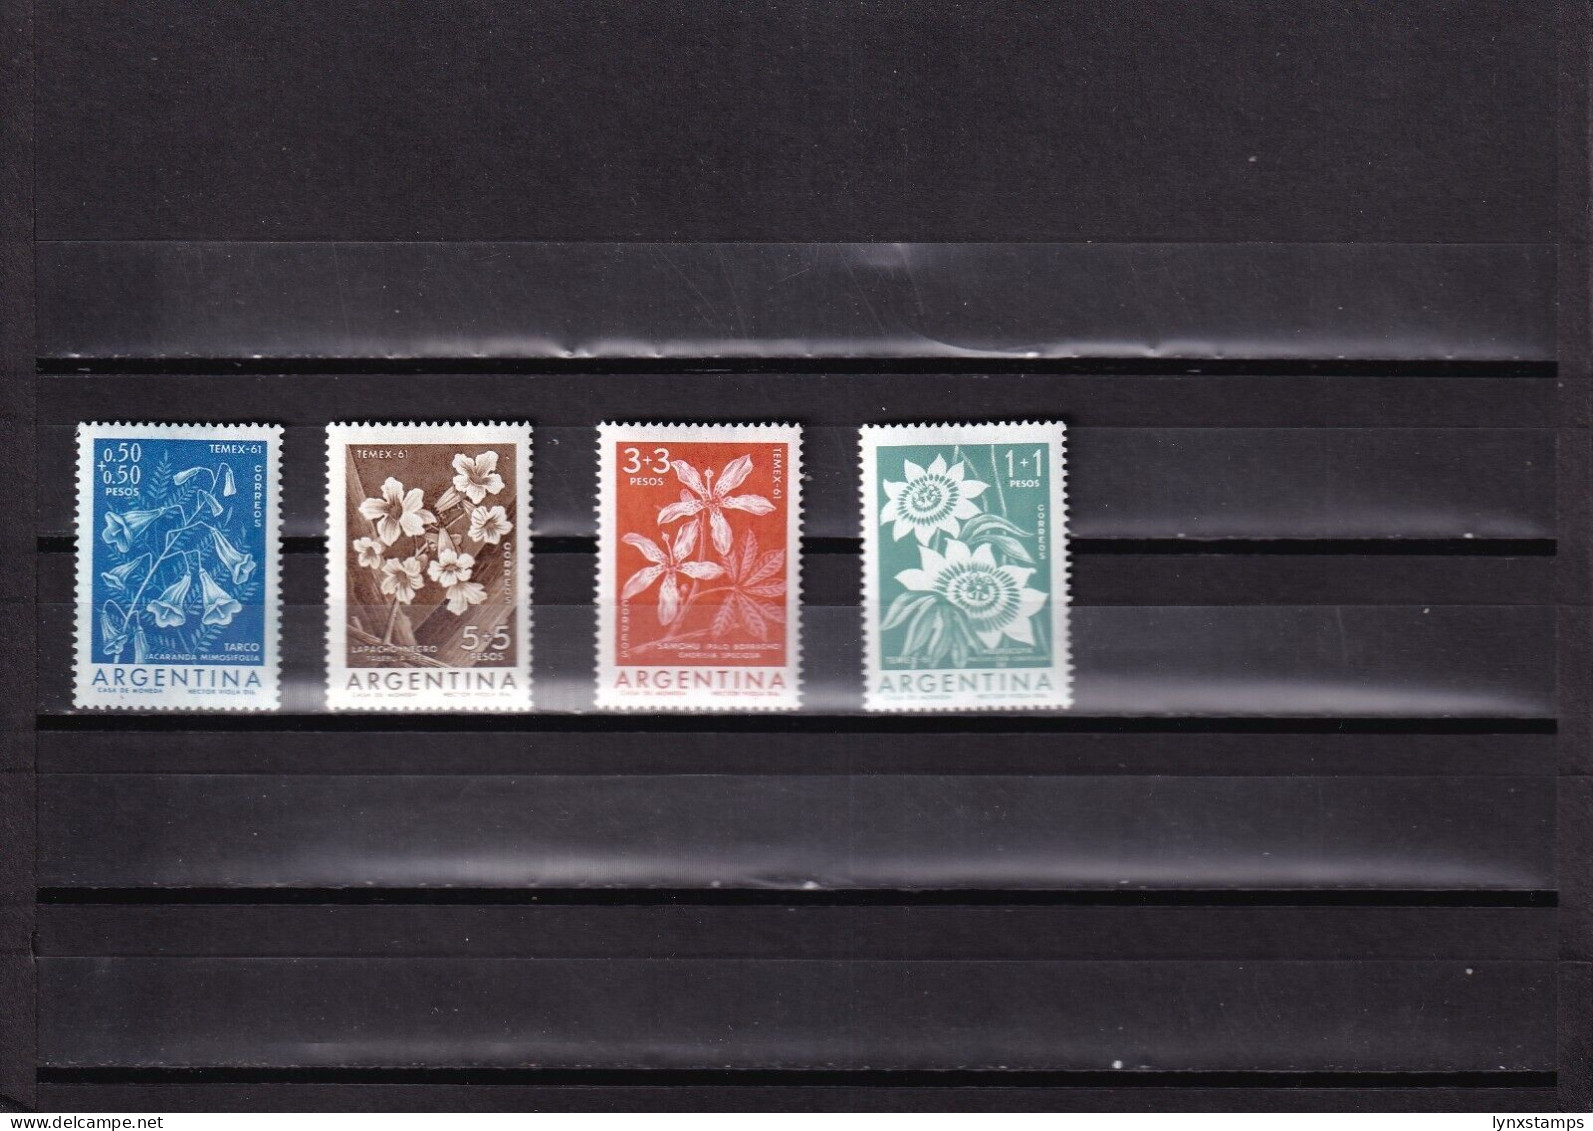 ER03 Argentina 1960 International Stamp Exhibition TEMEX - MLH Stamps - Usati